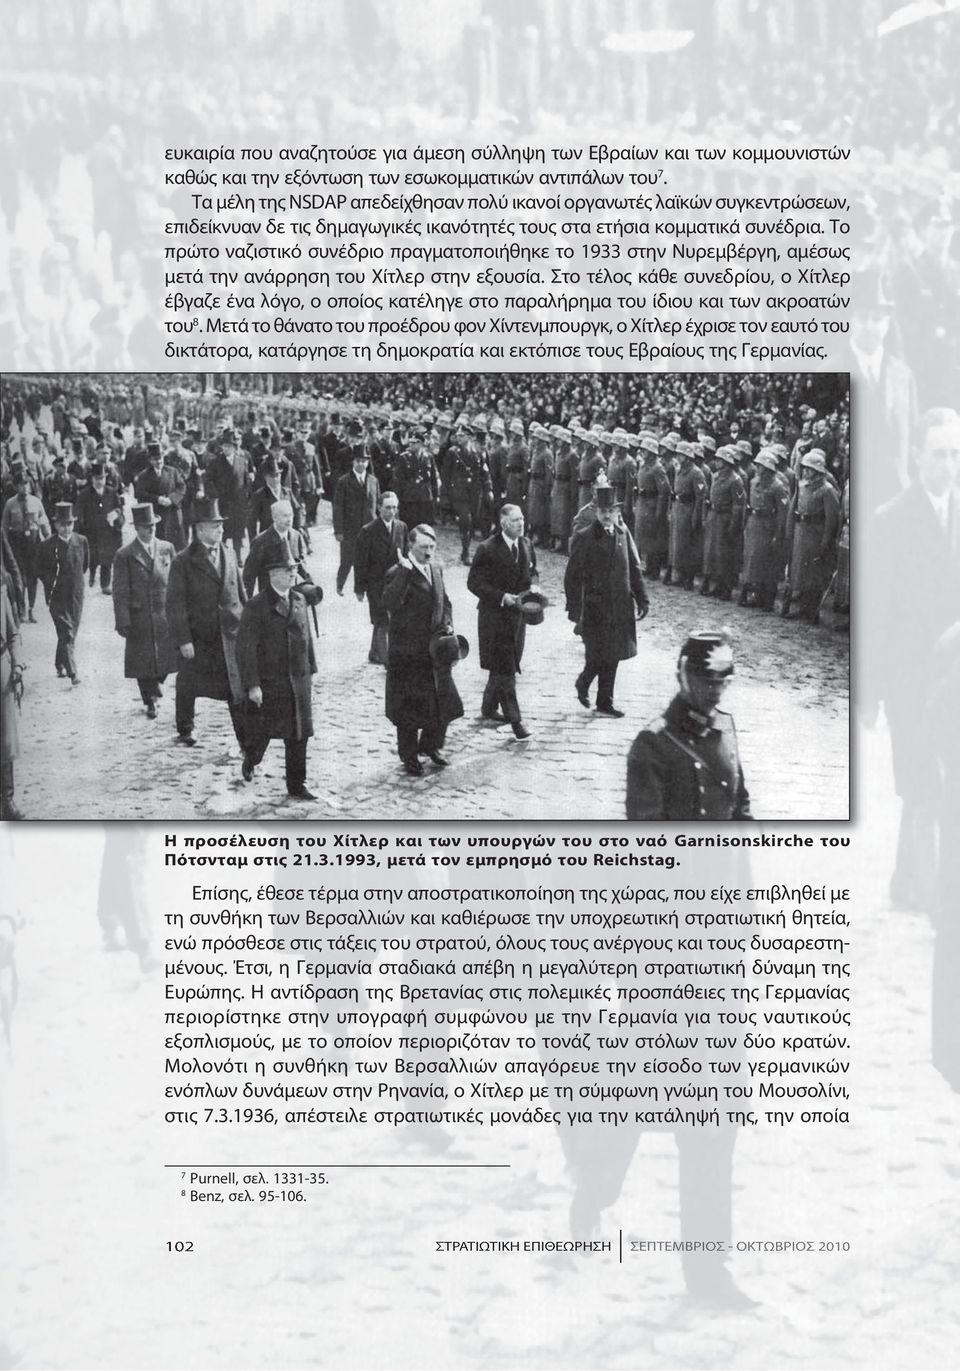 Το πρώτο ναζιστικό συνέδριο πραγματοποιήθηκε το 1933 στην Νυρεμβέργη, αμέσως μετά την ανάρρηση του Χίτλερ στην εξουσία.